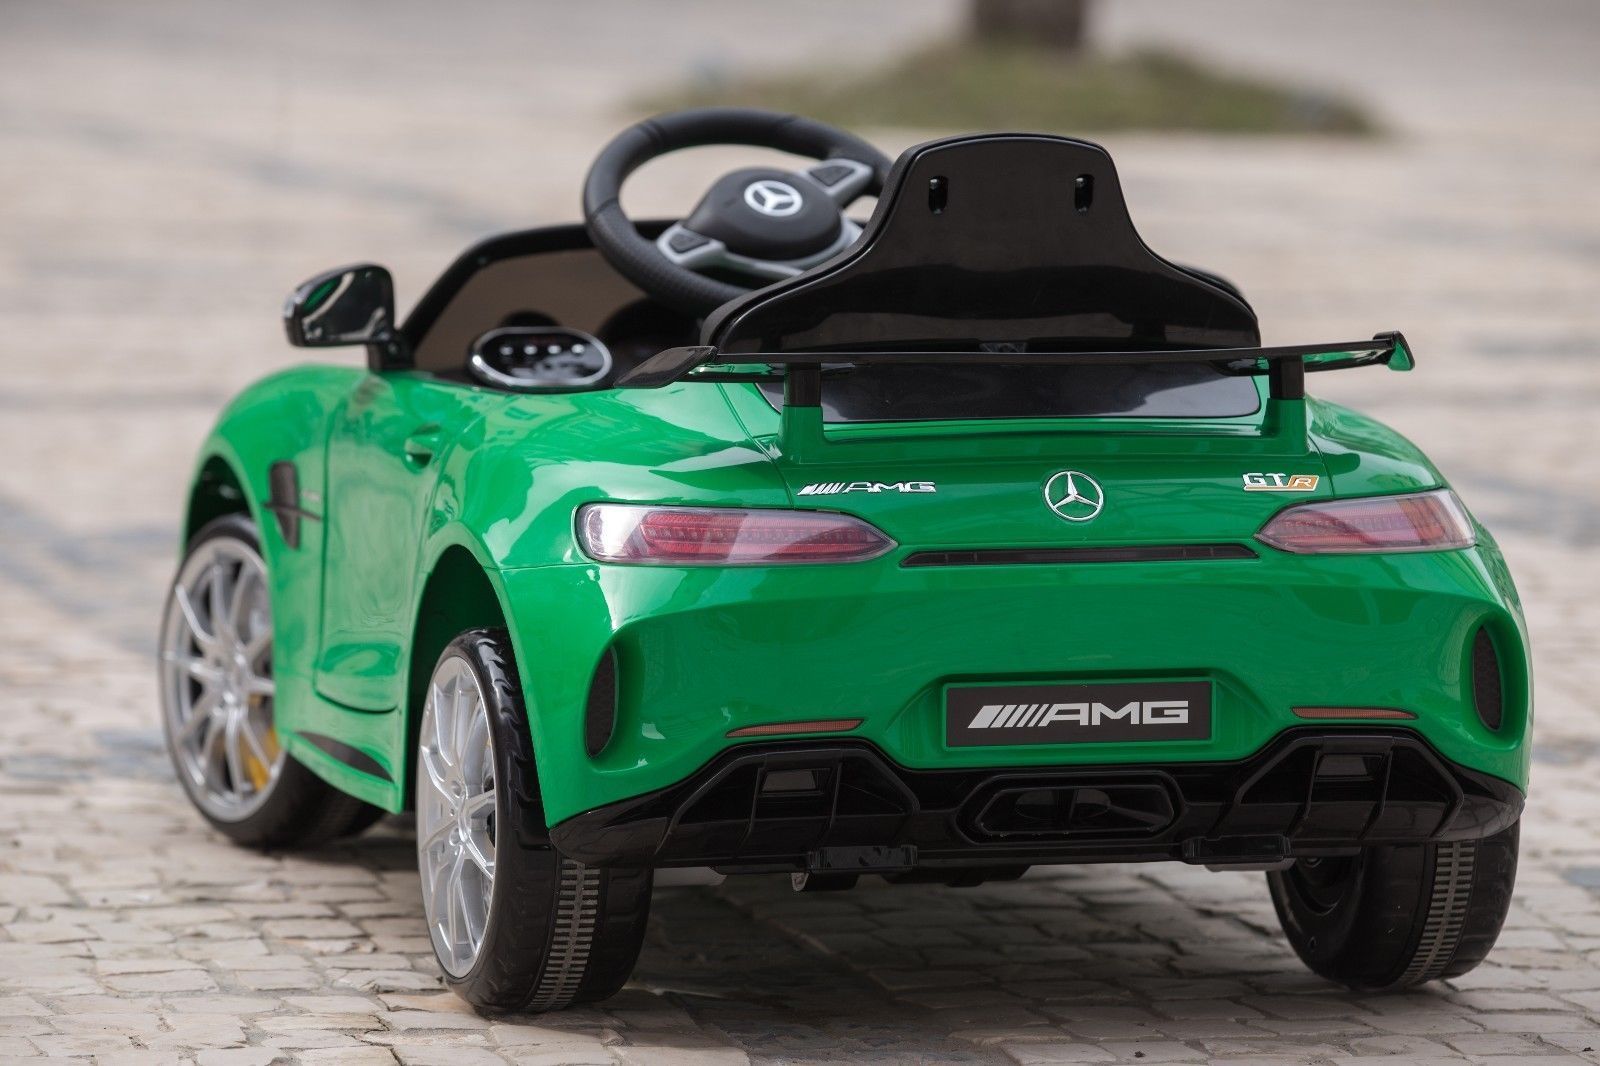 Электромобиль - Mercedes-Benz GTR, зеленый, свет и звук  